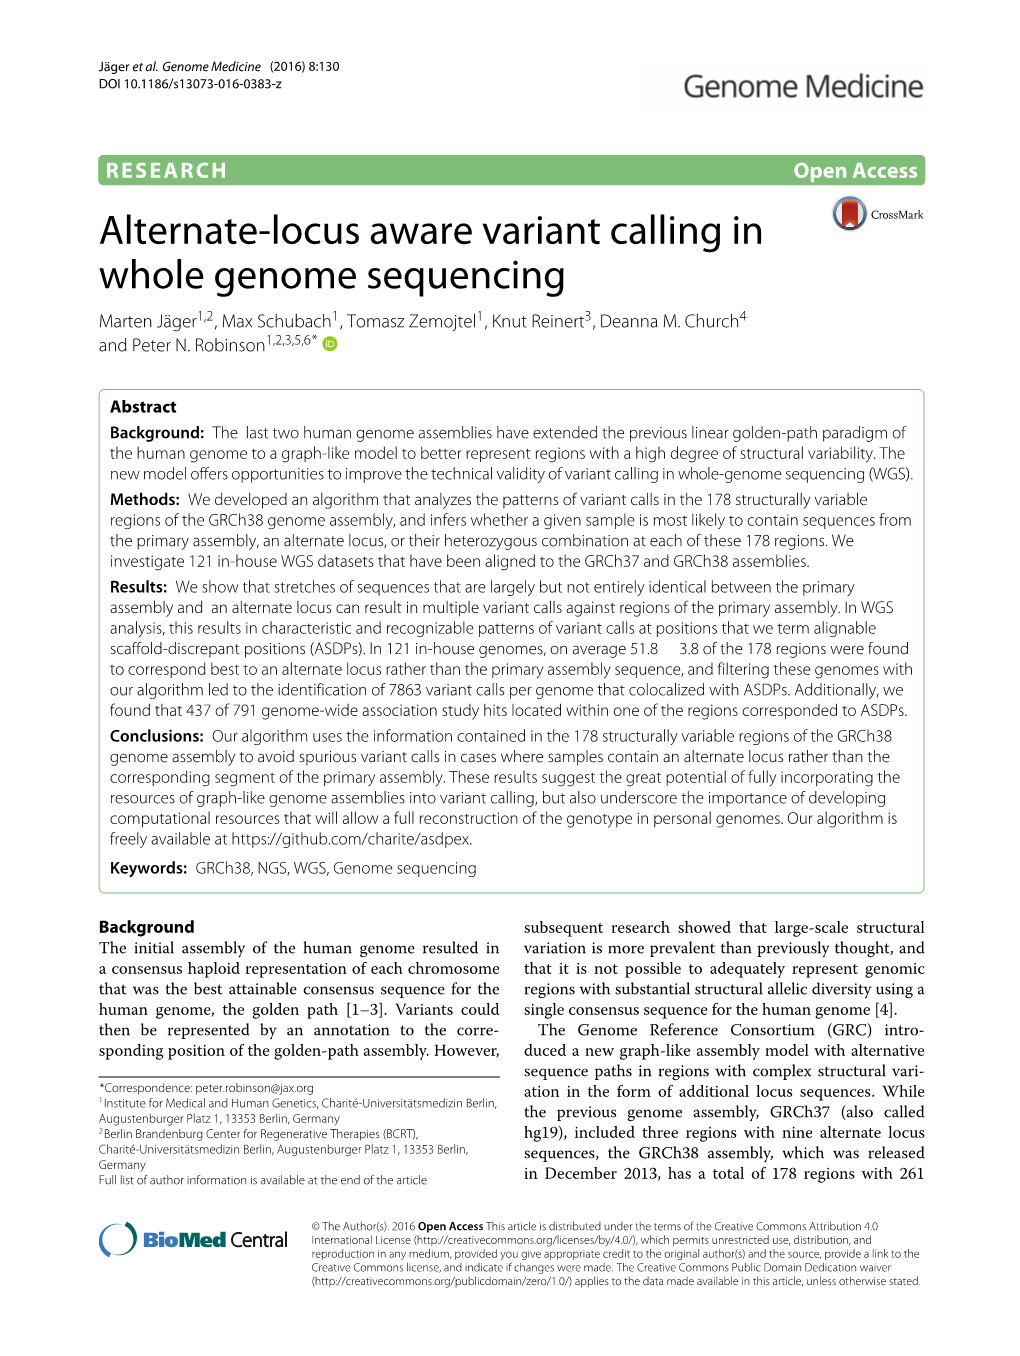 Alternate-Locus Aware Variant Calling in Whole Genome Sequencing Marten Jäger1,2, Max Schubach1, Tomasz Zemojtel1,Knutreinert3, Deanna M